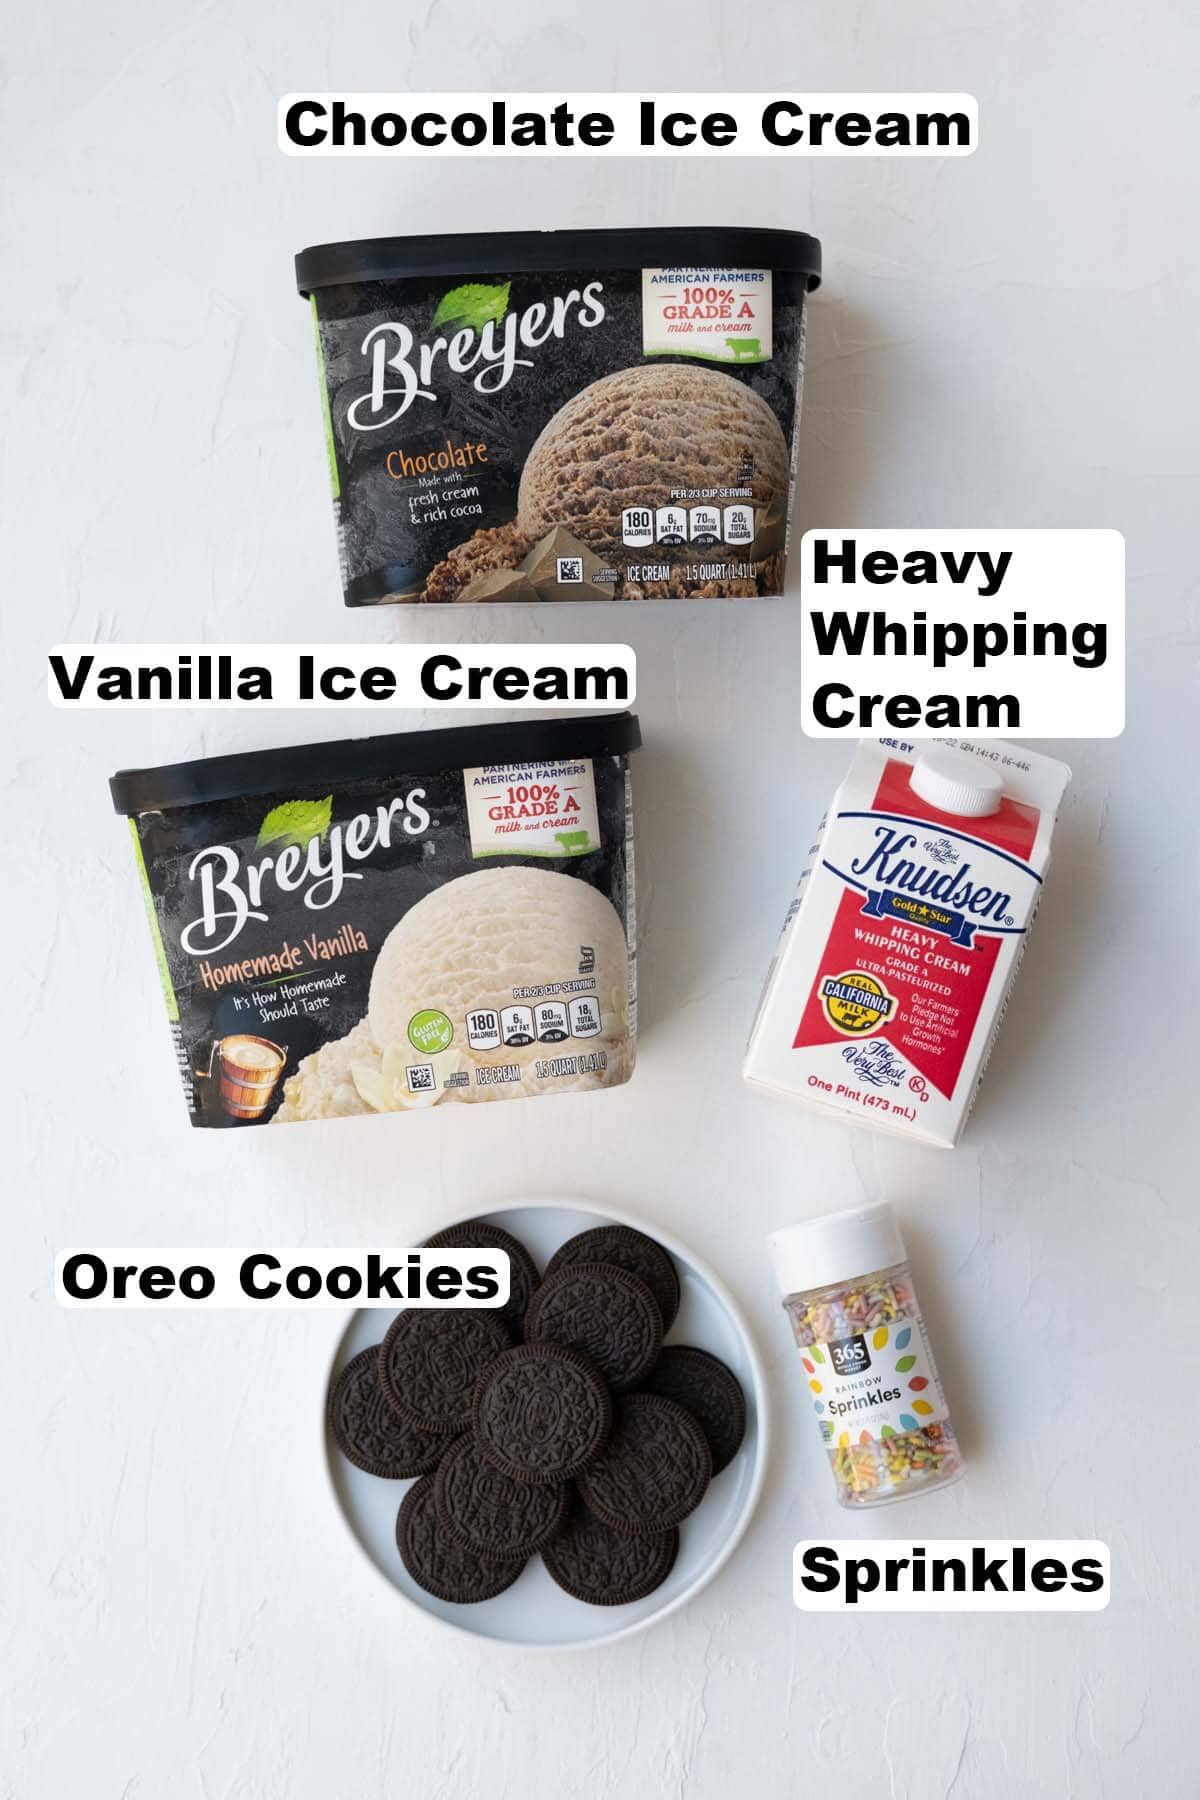 Ice cream cake ingredients.